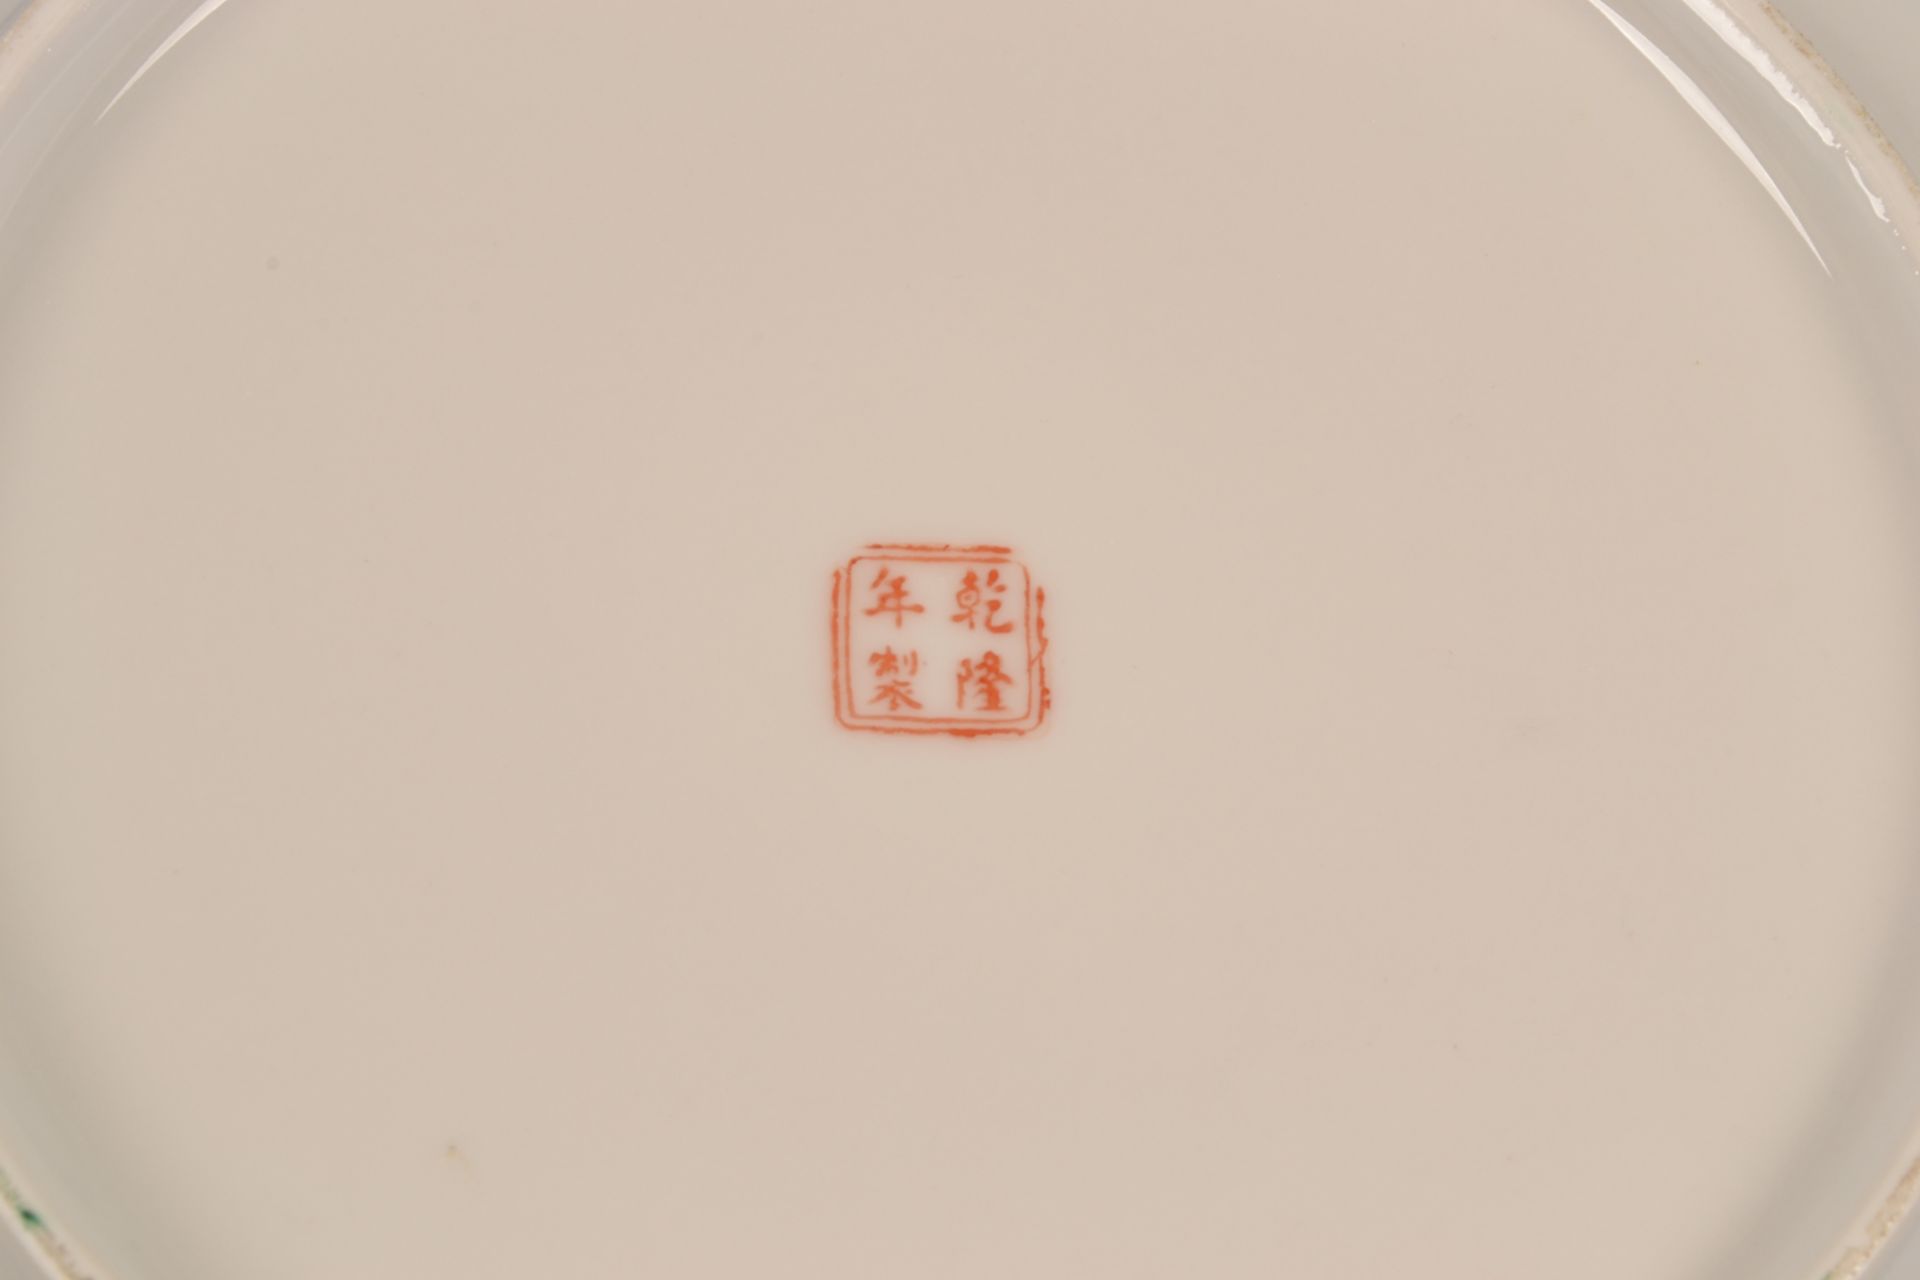 4teiliges Konvolut versch. Porzellanteile, Südostasien/China 20./21. Jhd. Versch. Alter, Größen, - Bild 13 aus 29